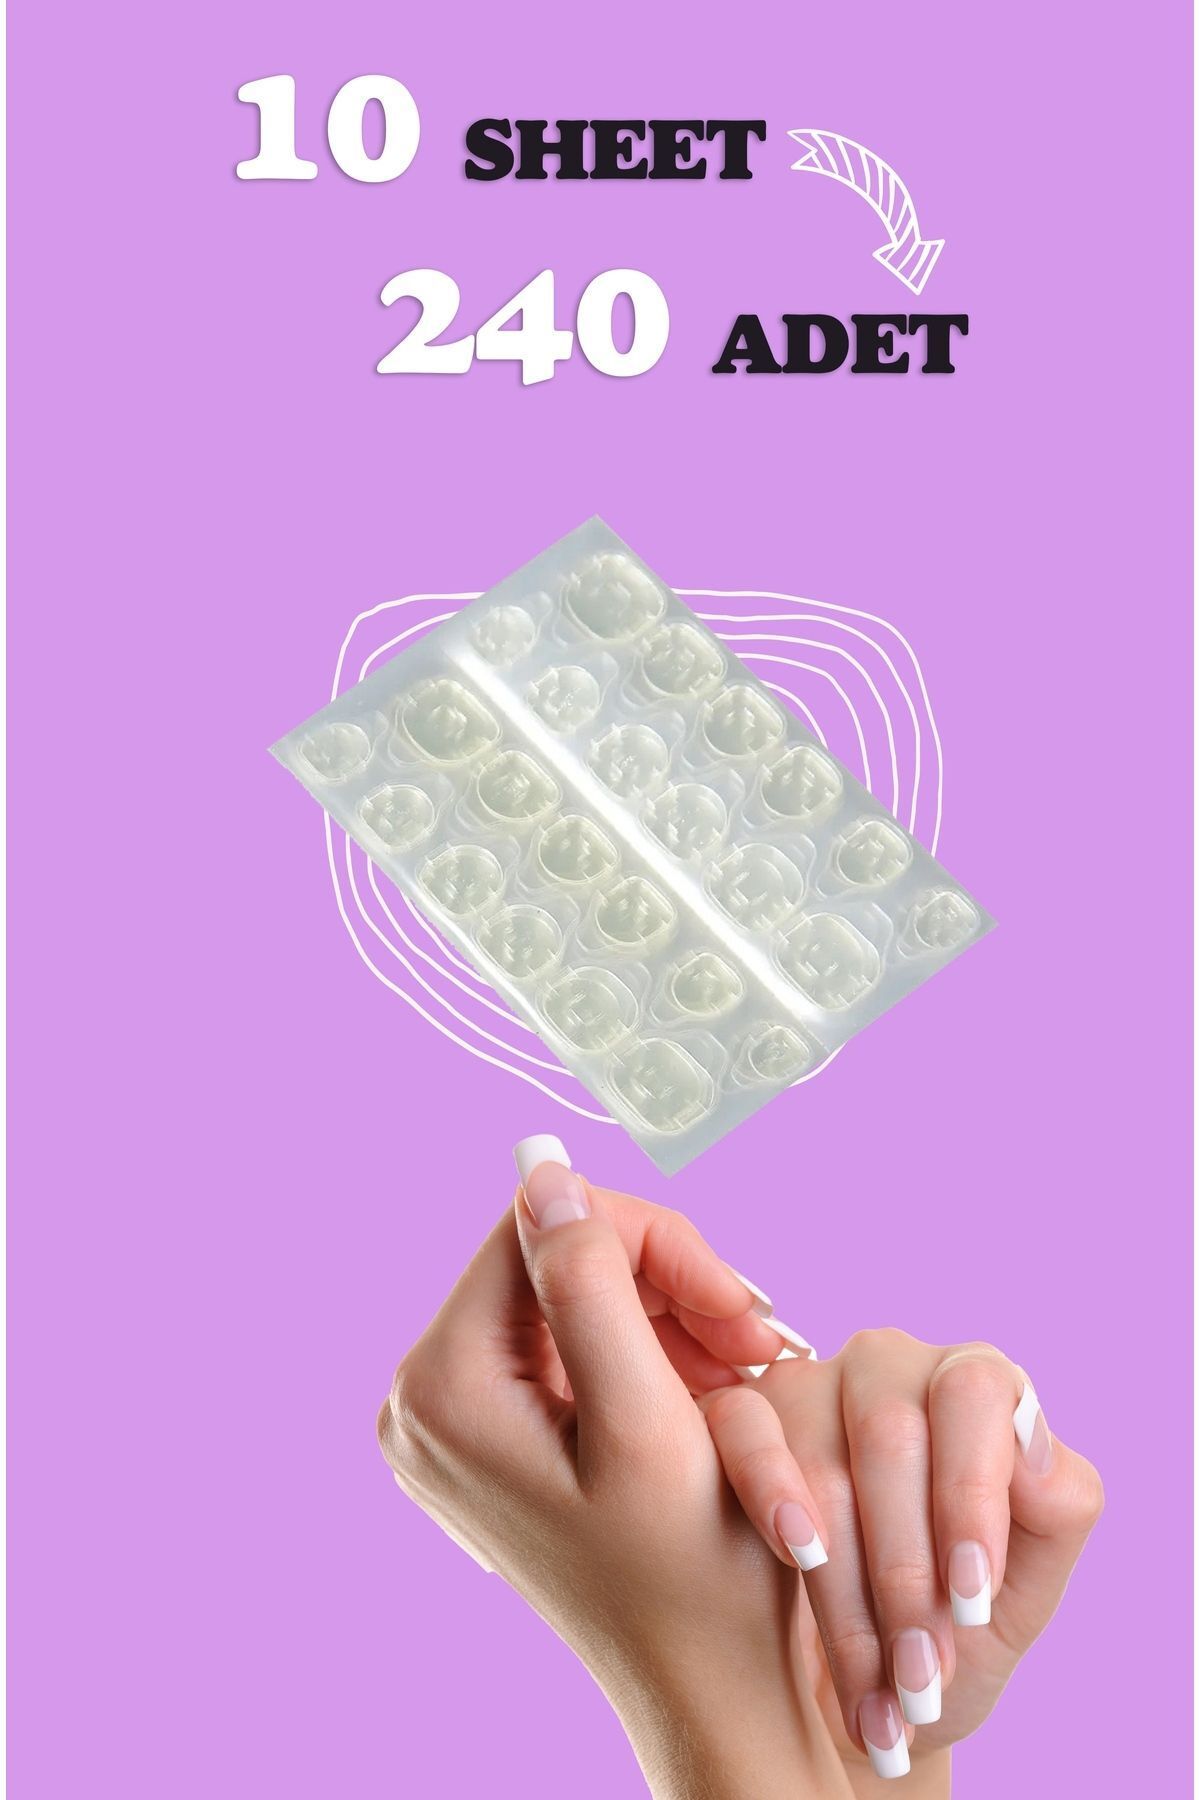 Ardinyo 240 Adet Takma Tırnak Yapıştırıcı Protez Yapıştırıcı Jel Sticker Tak Çıkar Yapıştırma Bandı